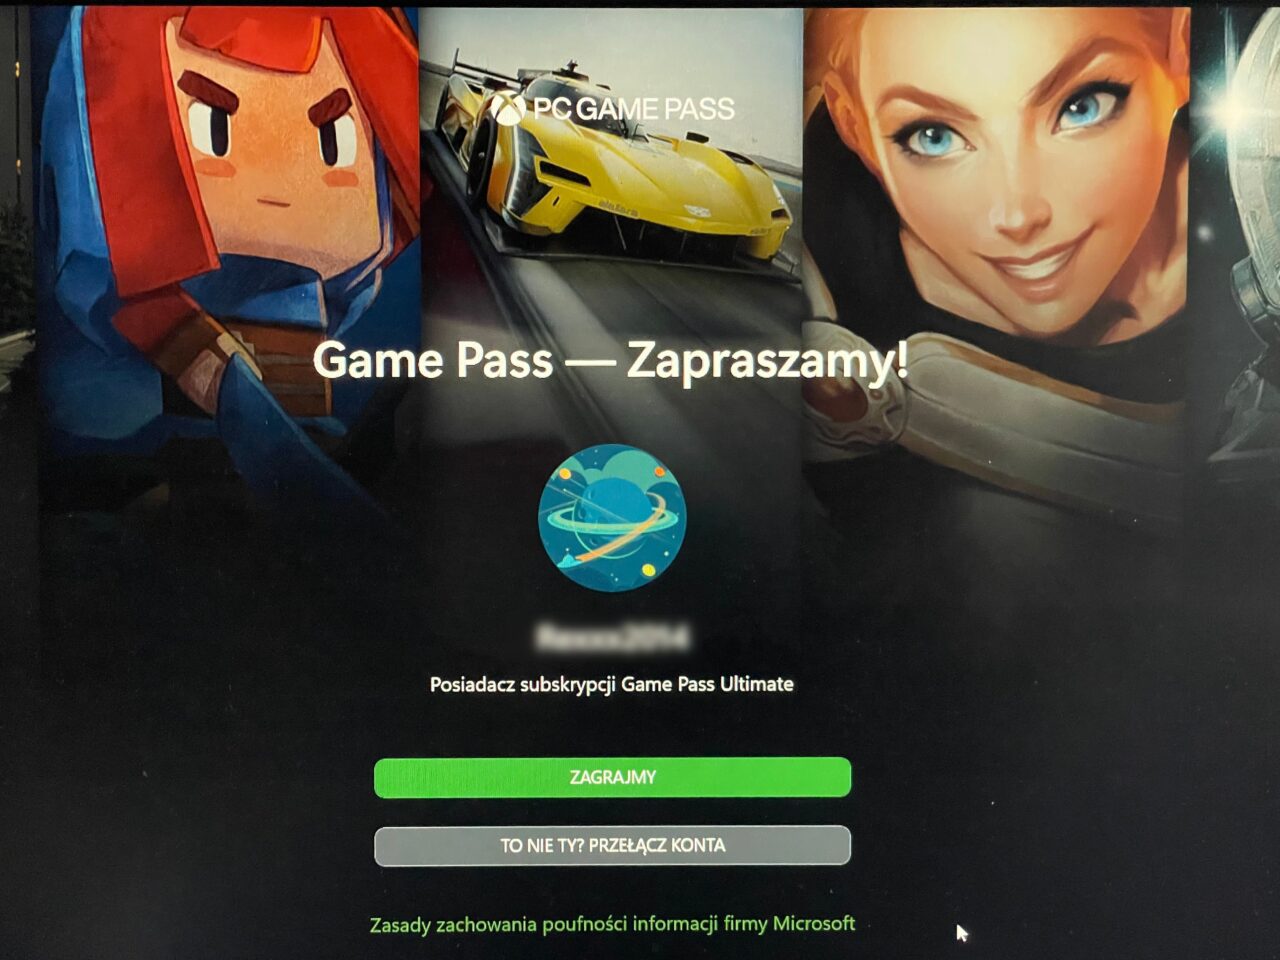 Ekran komputera z grafiką reklamującą usługę Xbox Game Pass z postaciami z gier, samochodem wyścigowym i napisem "Game Pass — Zapraszamy!". Na dole widoczne przyciski "ZAGRAJMY" oraz "TO NIE TY? PRZEŁĄCZ KONTA" oraz logo firmowe.